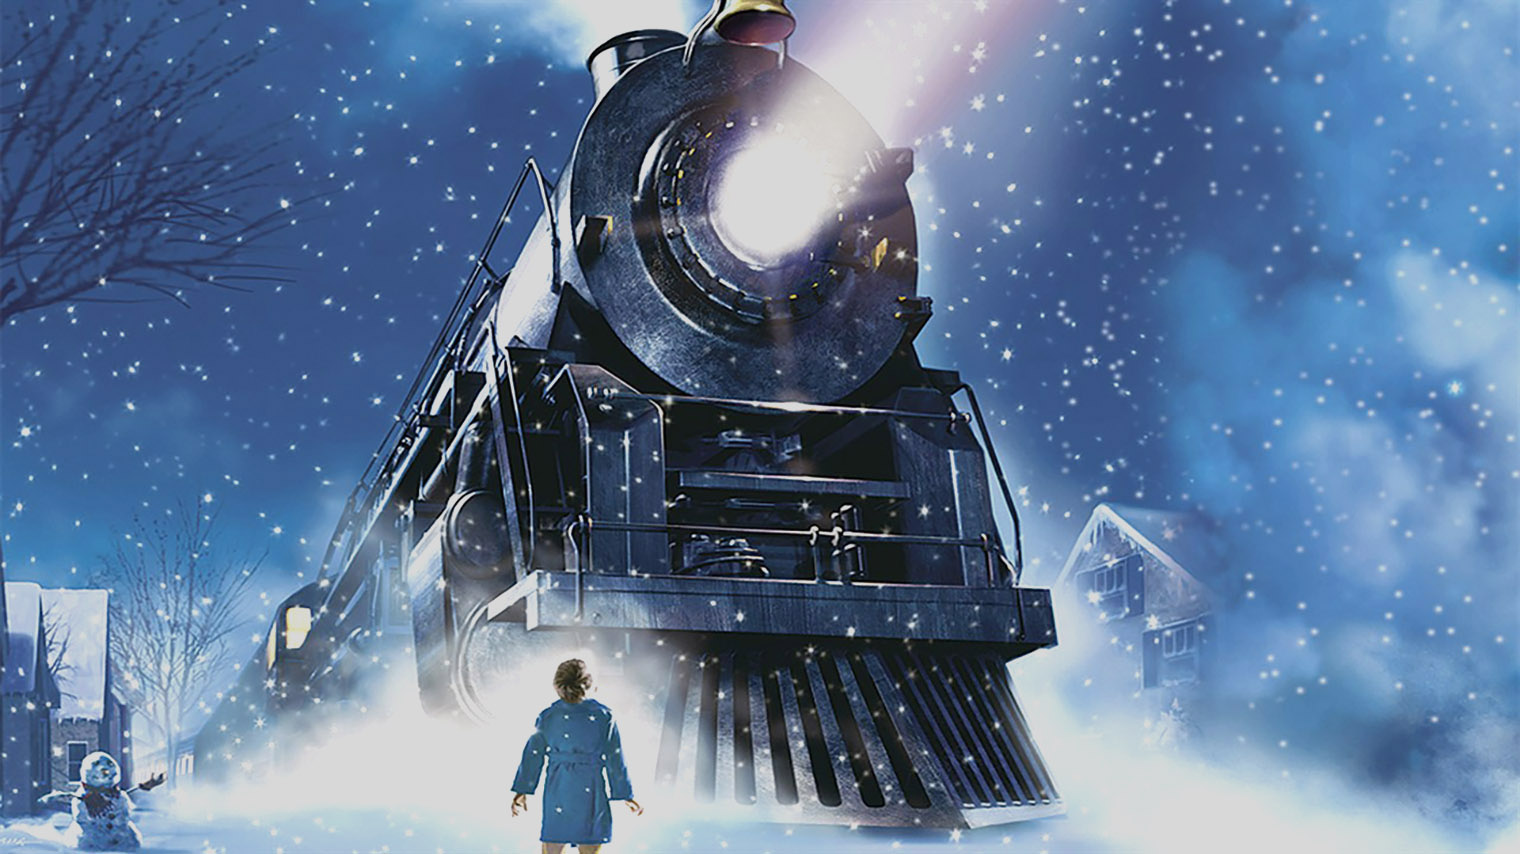 У поезда из мультфильма есть реальный прототип — паровоз Pere Marquette 1225. Кадр: Warner Bros. Pictures